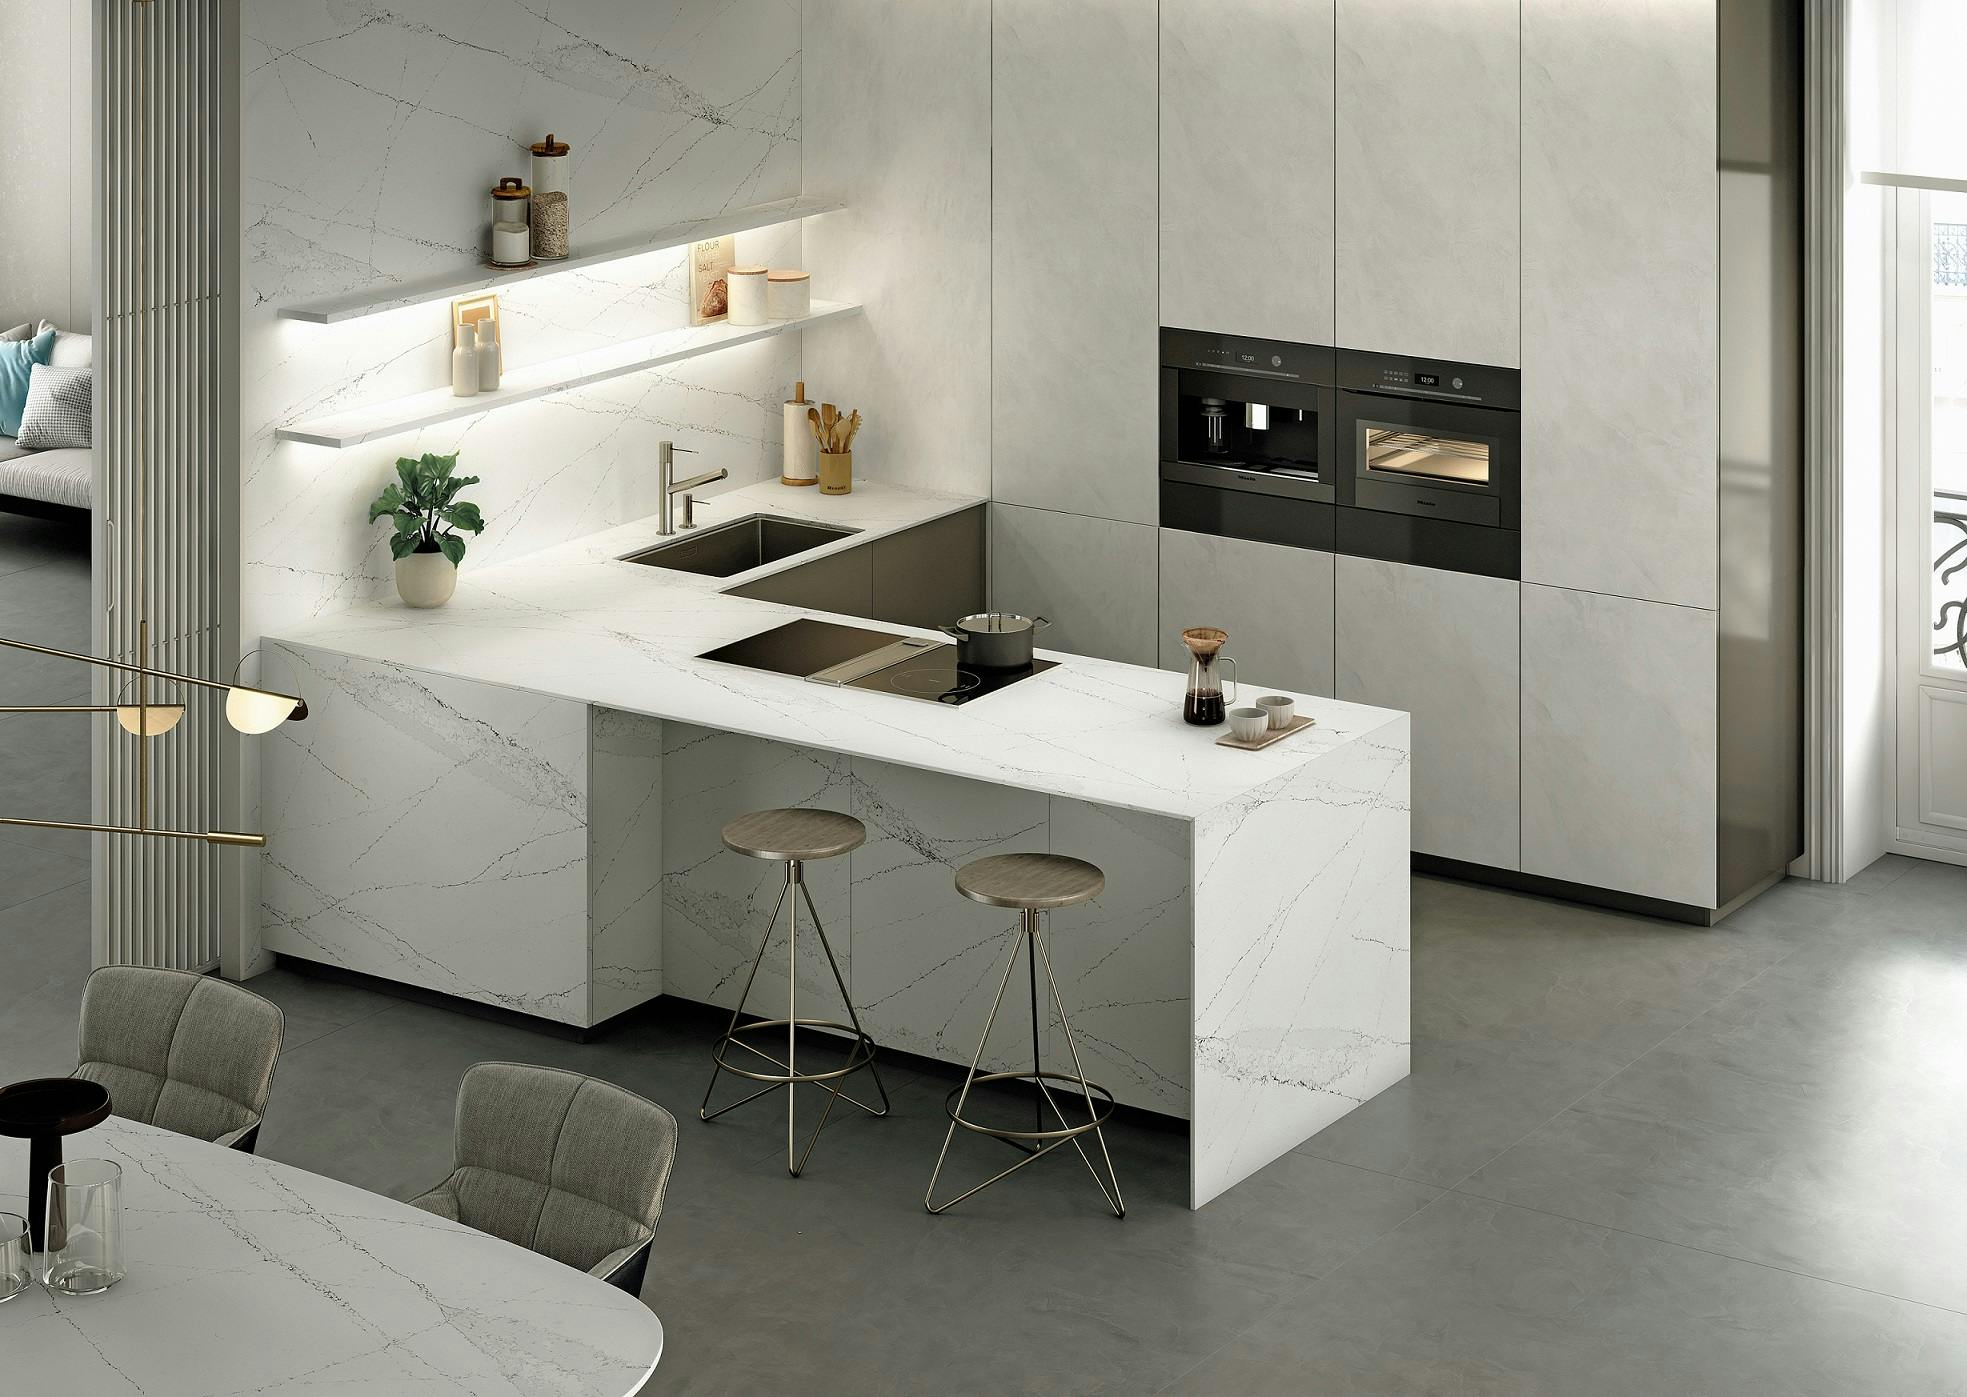 Image of Silestone Kitchen Ethereal Haze 2 in Ethereal Haze, Yüzeylerde Sıcak ve Soğuk Tonları Birleştiriyor - Cosentino